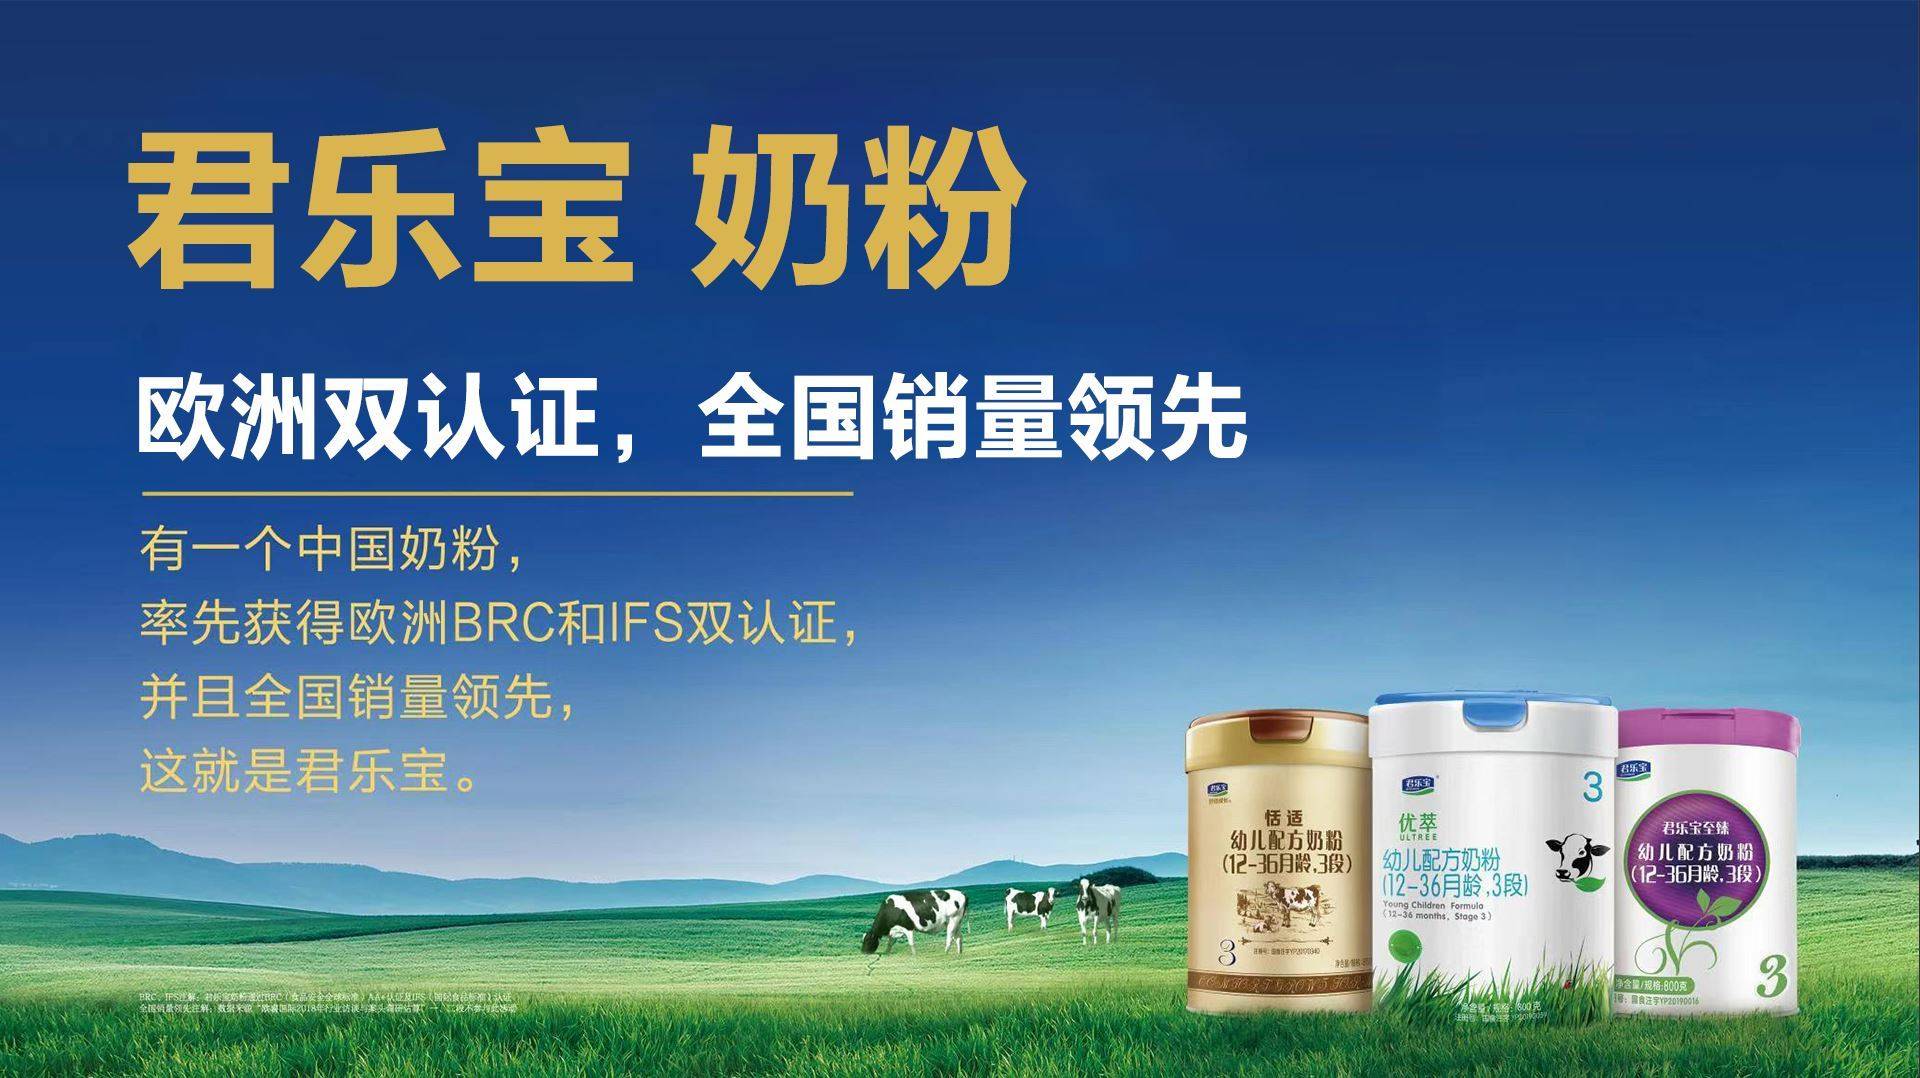 朱丹蓬谈乳业:国产崛起,君乐宝奶粉引领中国奶粉黄金时代